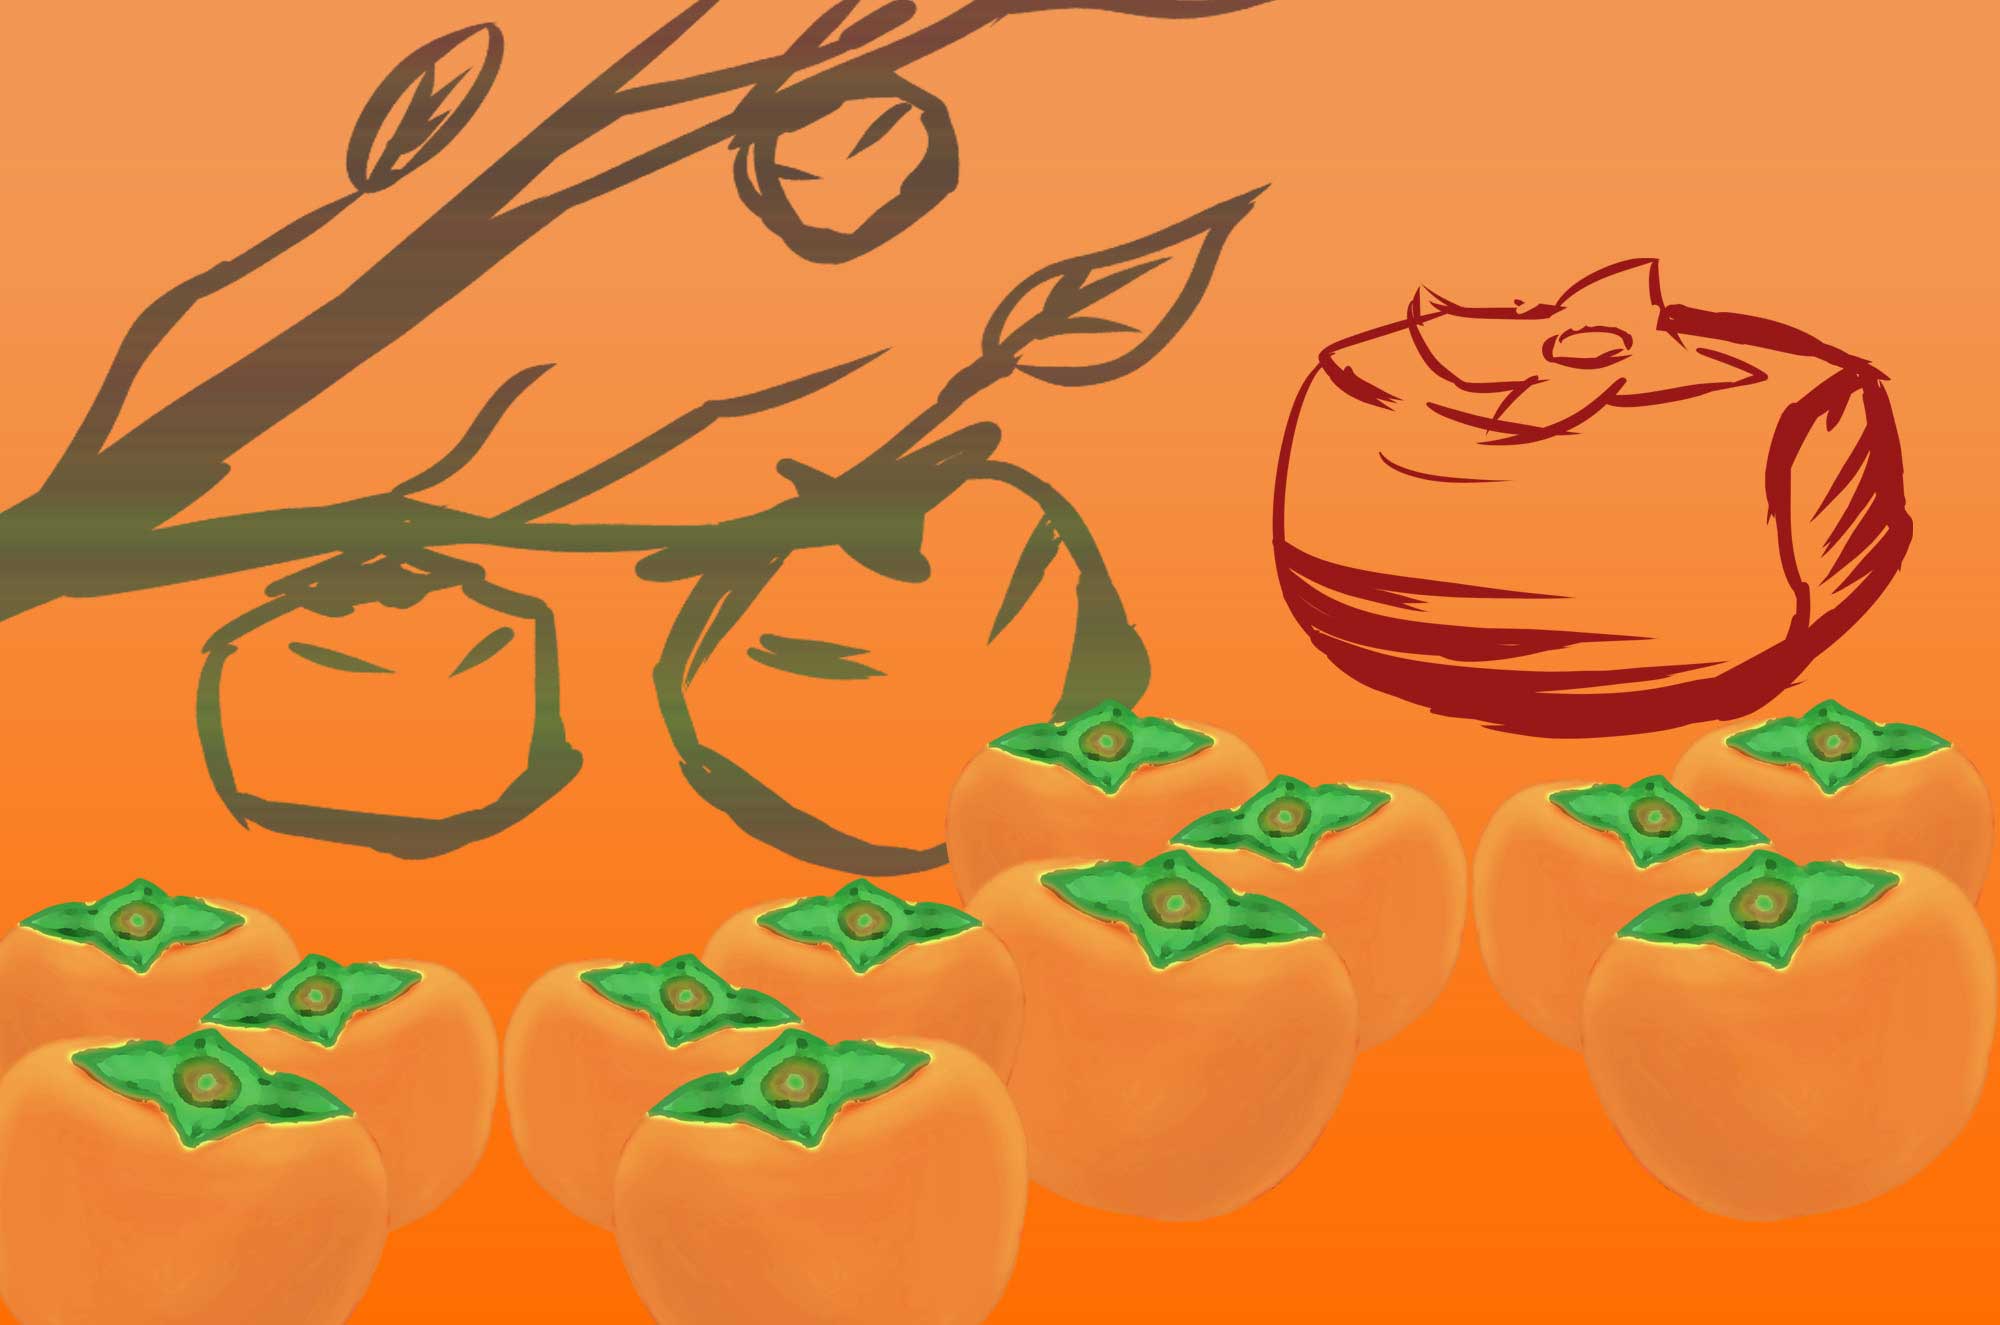 柿イラスト - ベクター・手描き・かわいい果物無料素材